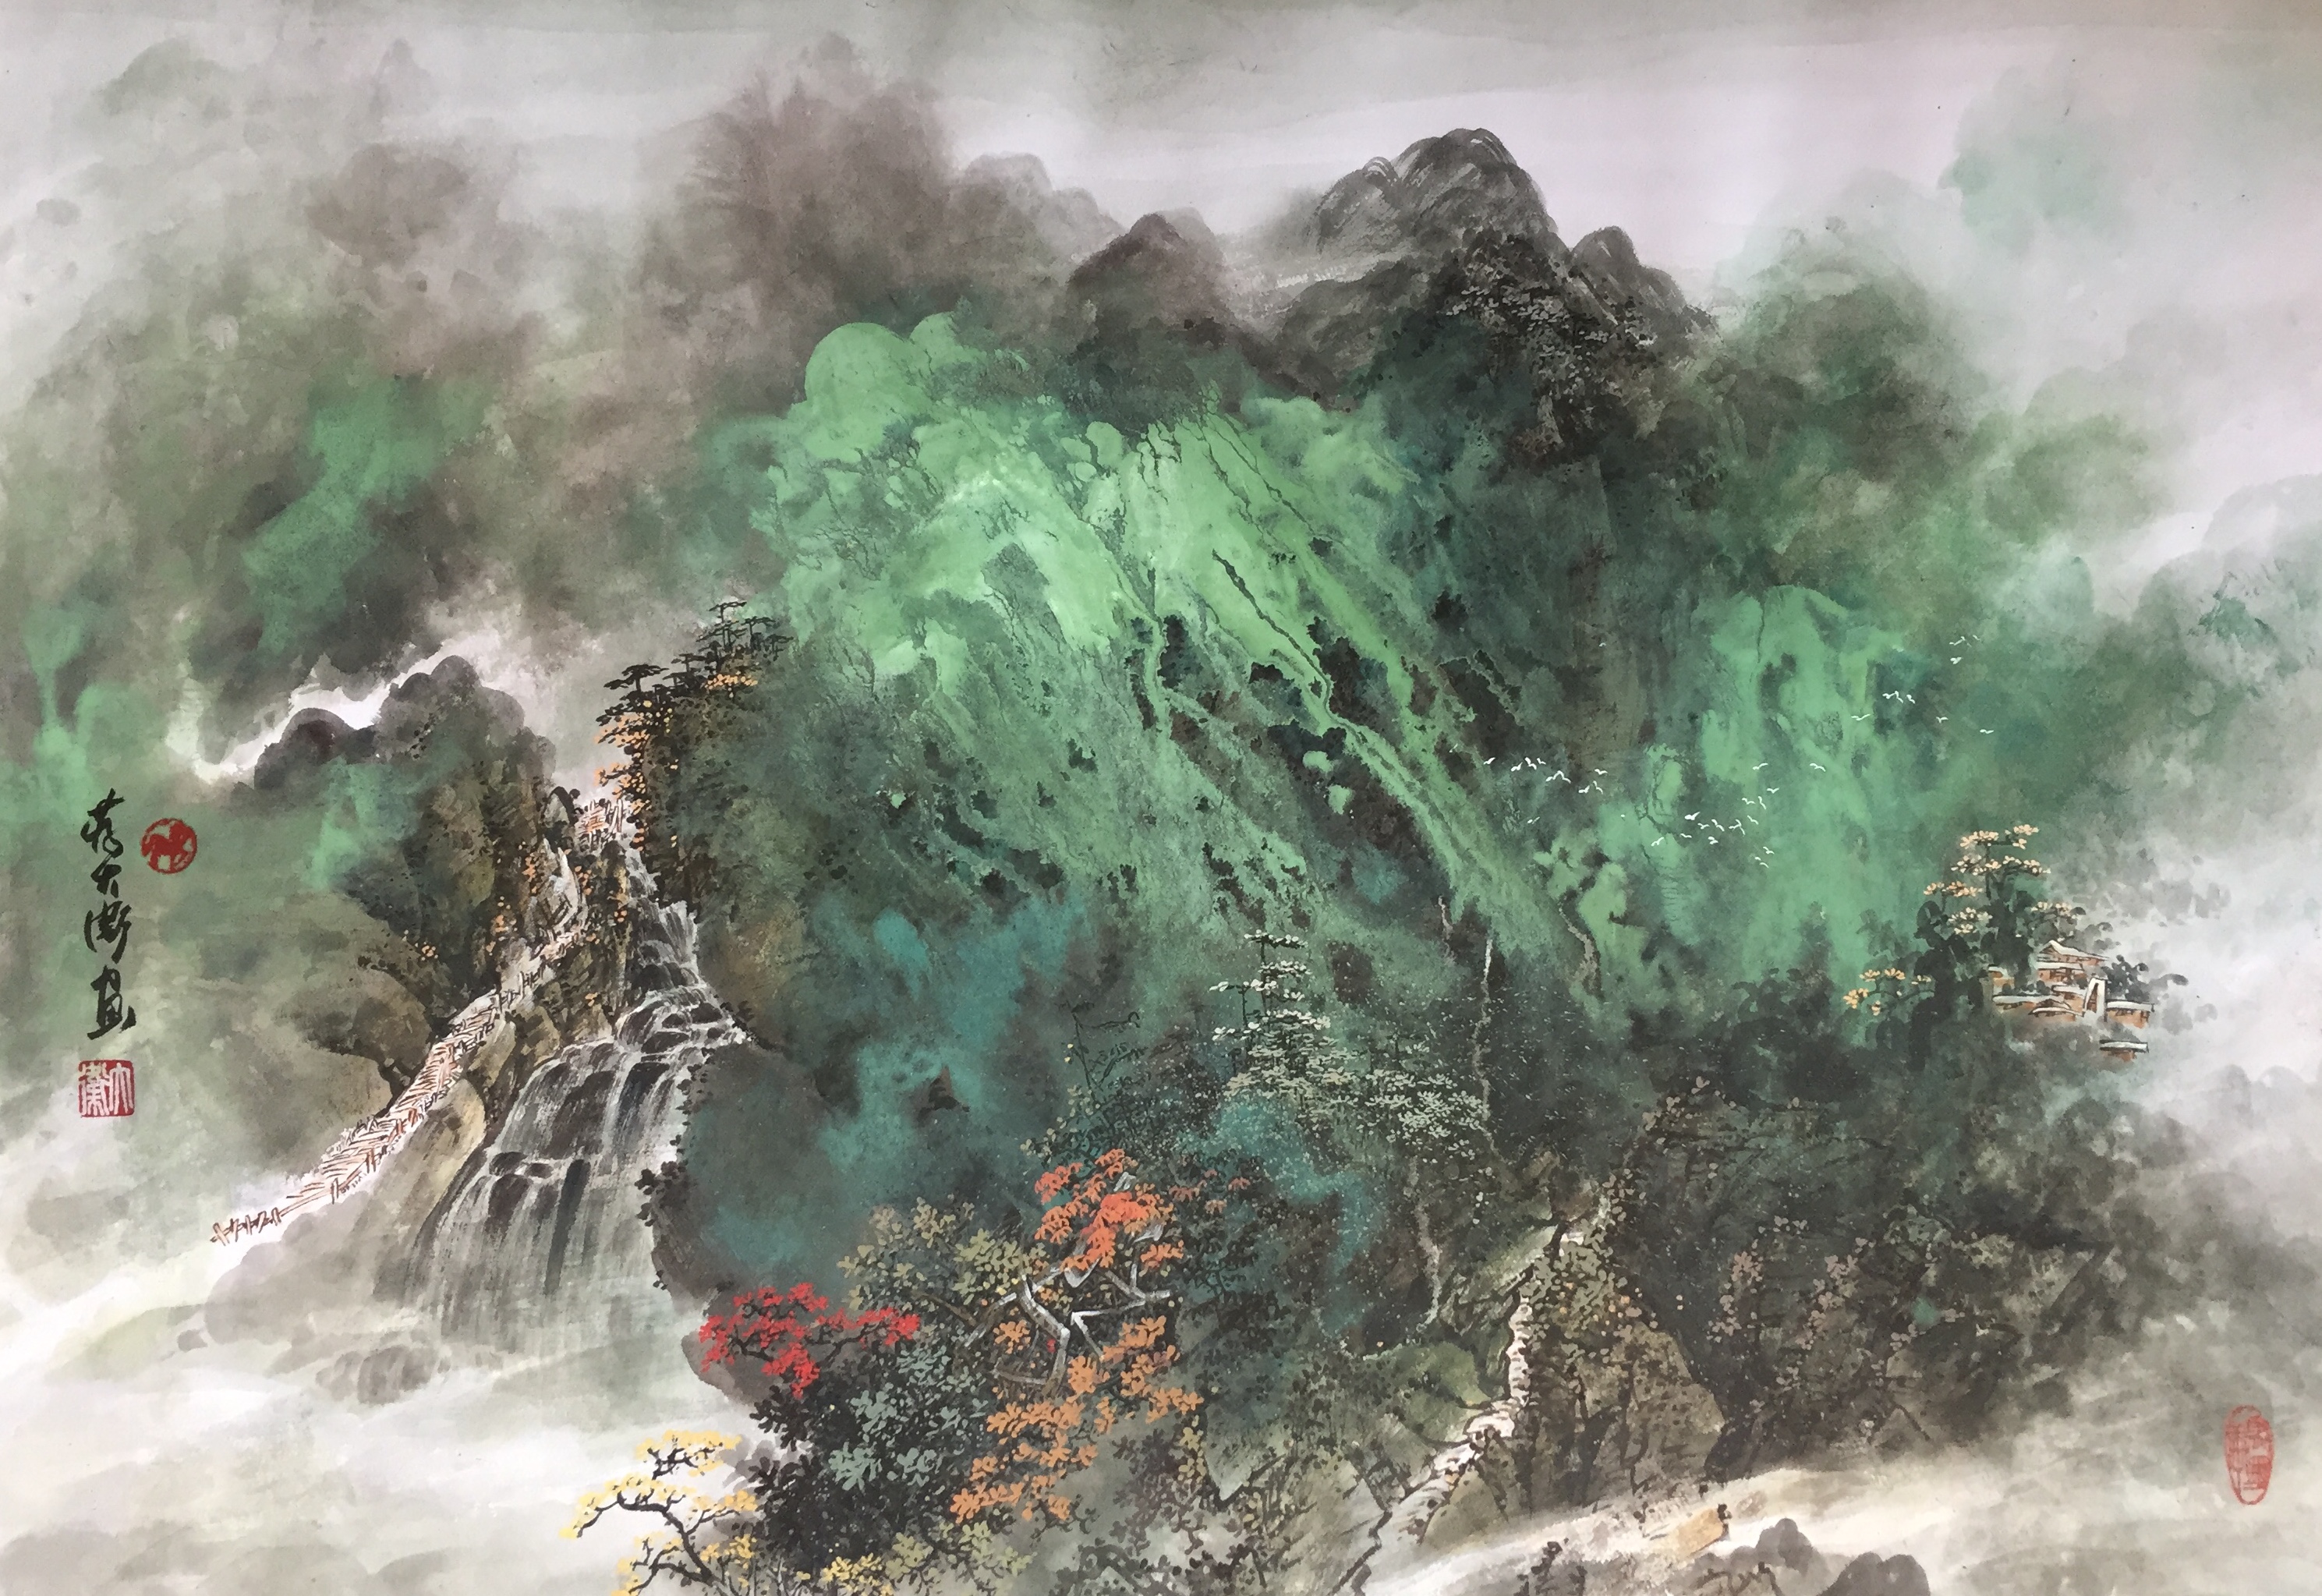 中国美术人物志——蒋大卫·第四届艺术名家书画大拜年